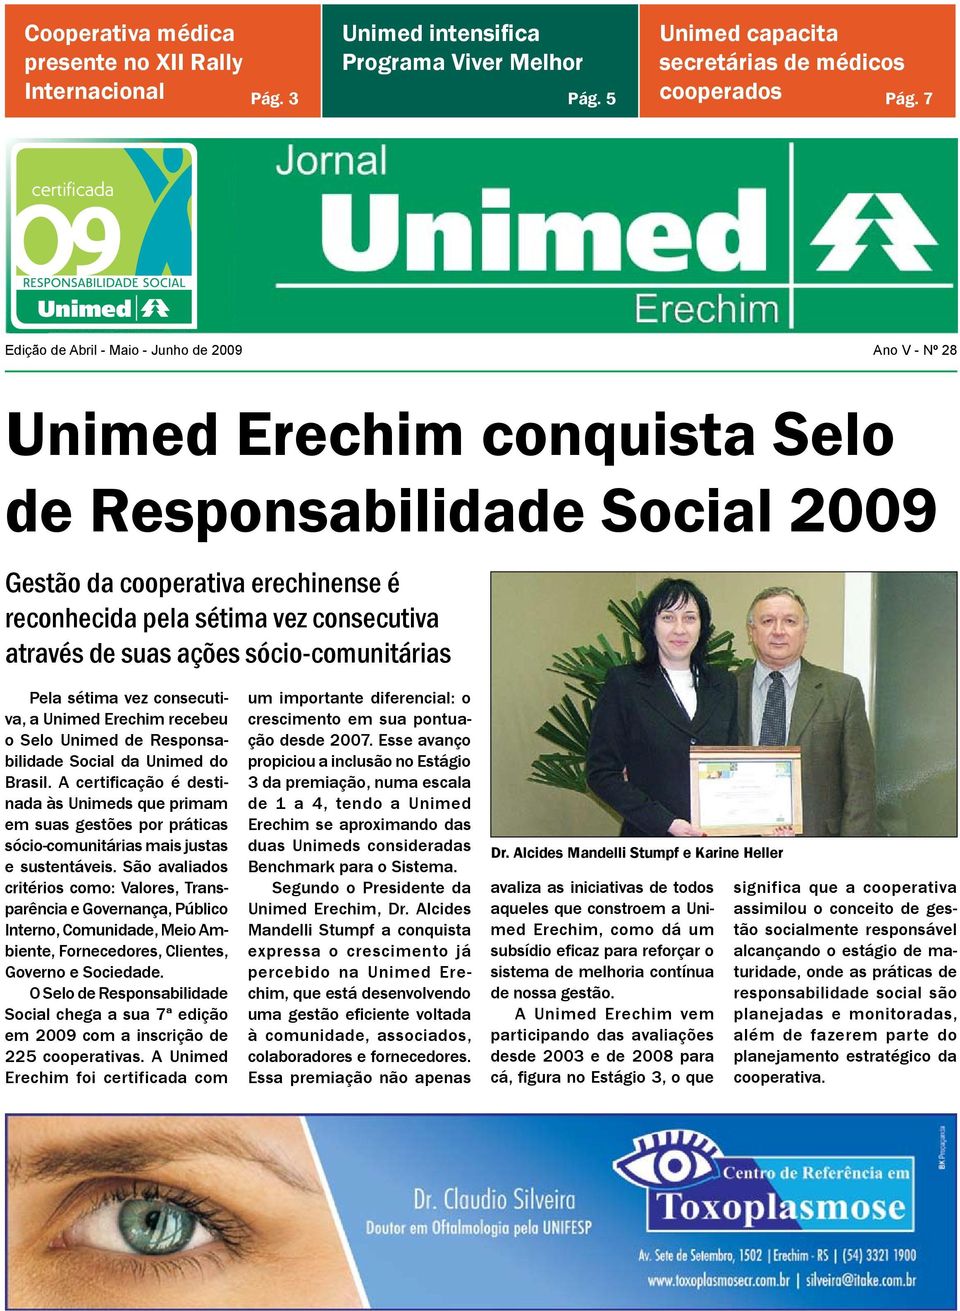 através de suas ações sócio-comunitárias Pela sétima vez consecutiva, a Unimed Erechim recebeu o Selo Unimed de Responsabilidade Social da Unimed do Brasil.